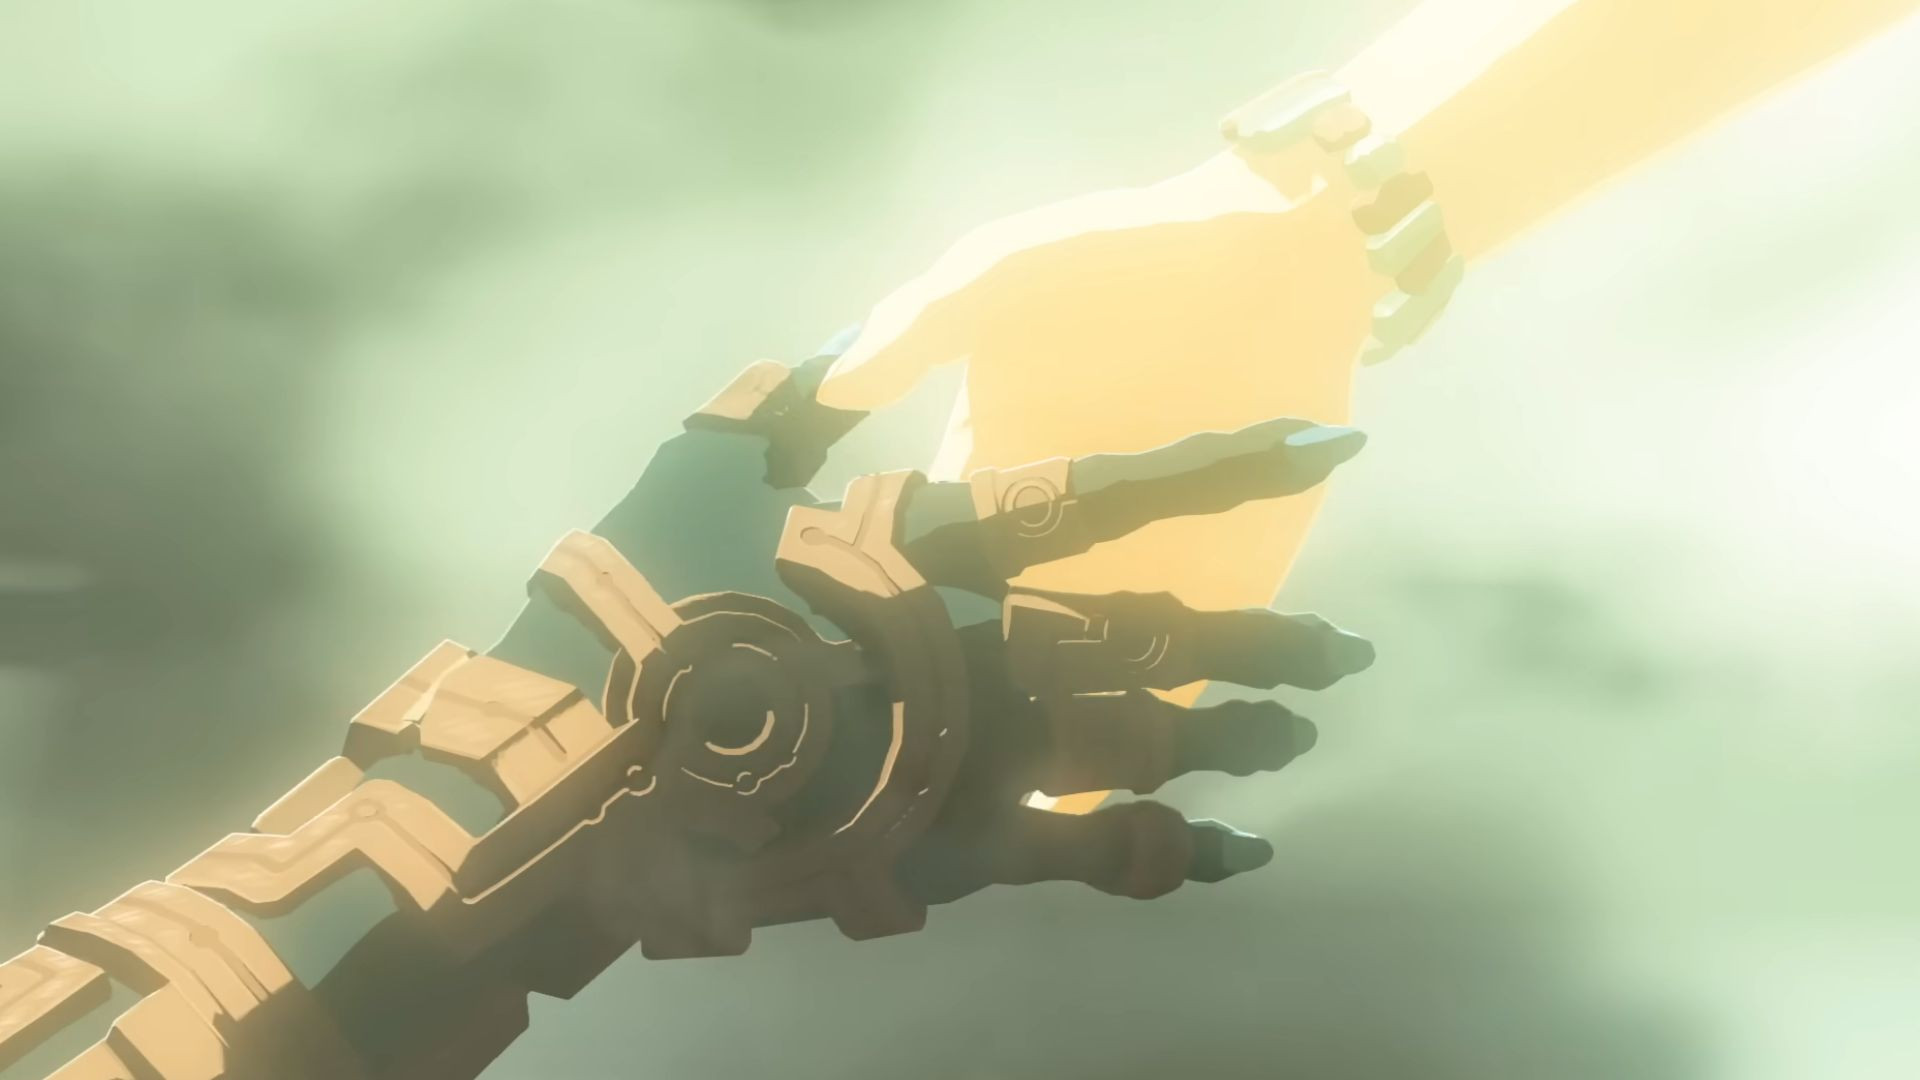 Qu'arrive-t-il au bras de Link ?